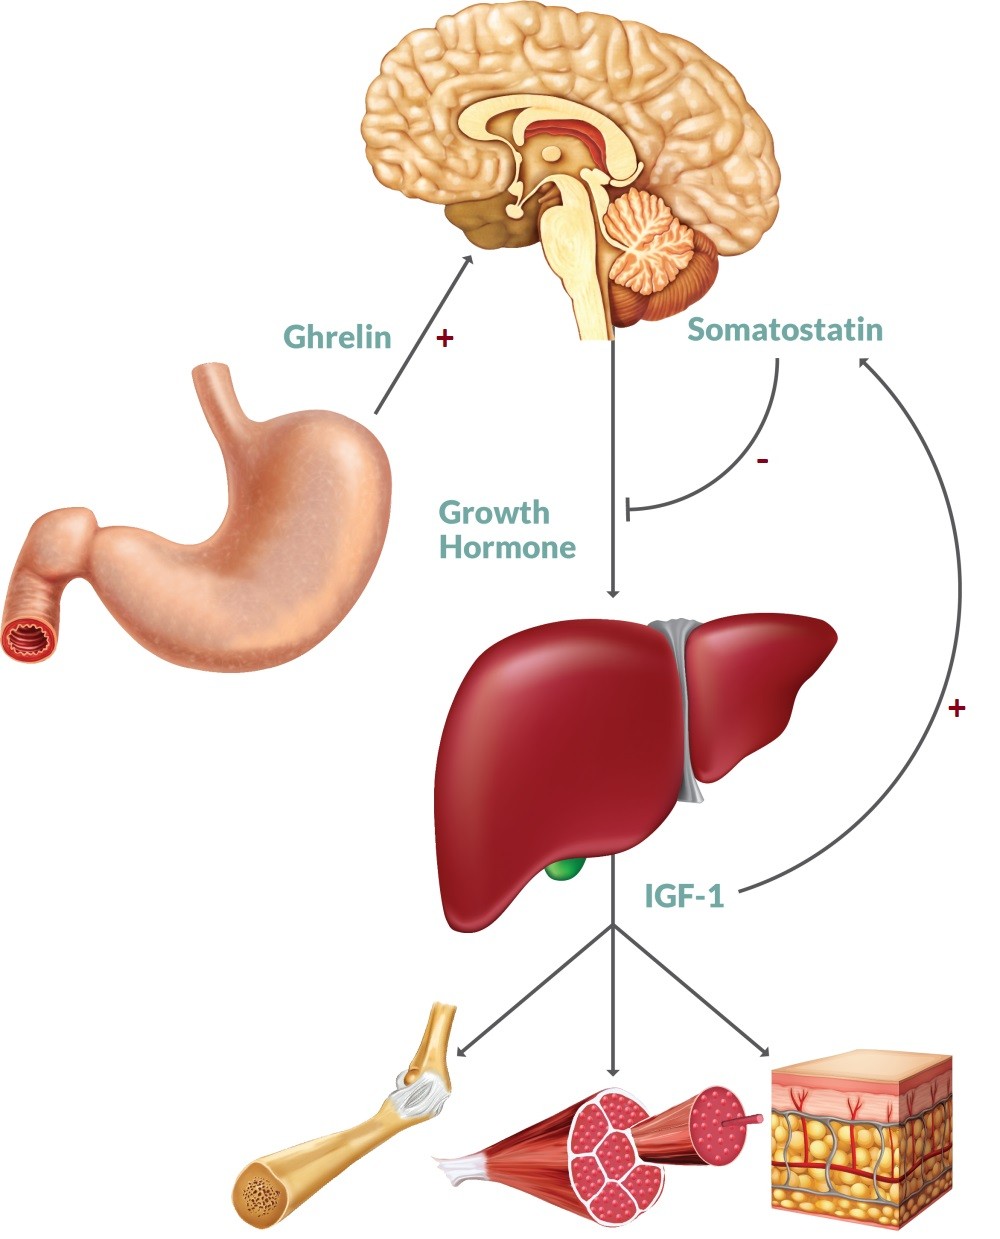 Vai trò của hormone GH (Growth Hormone) đối với cơ thể